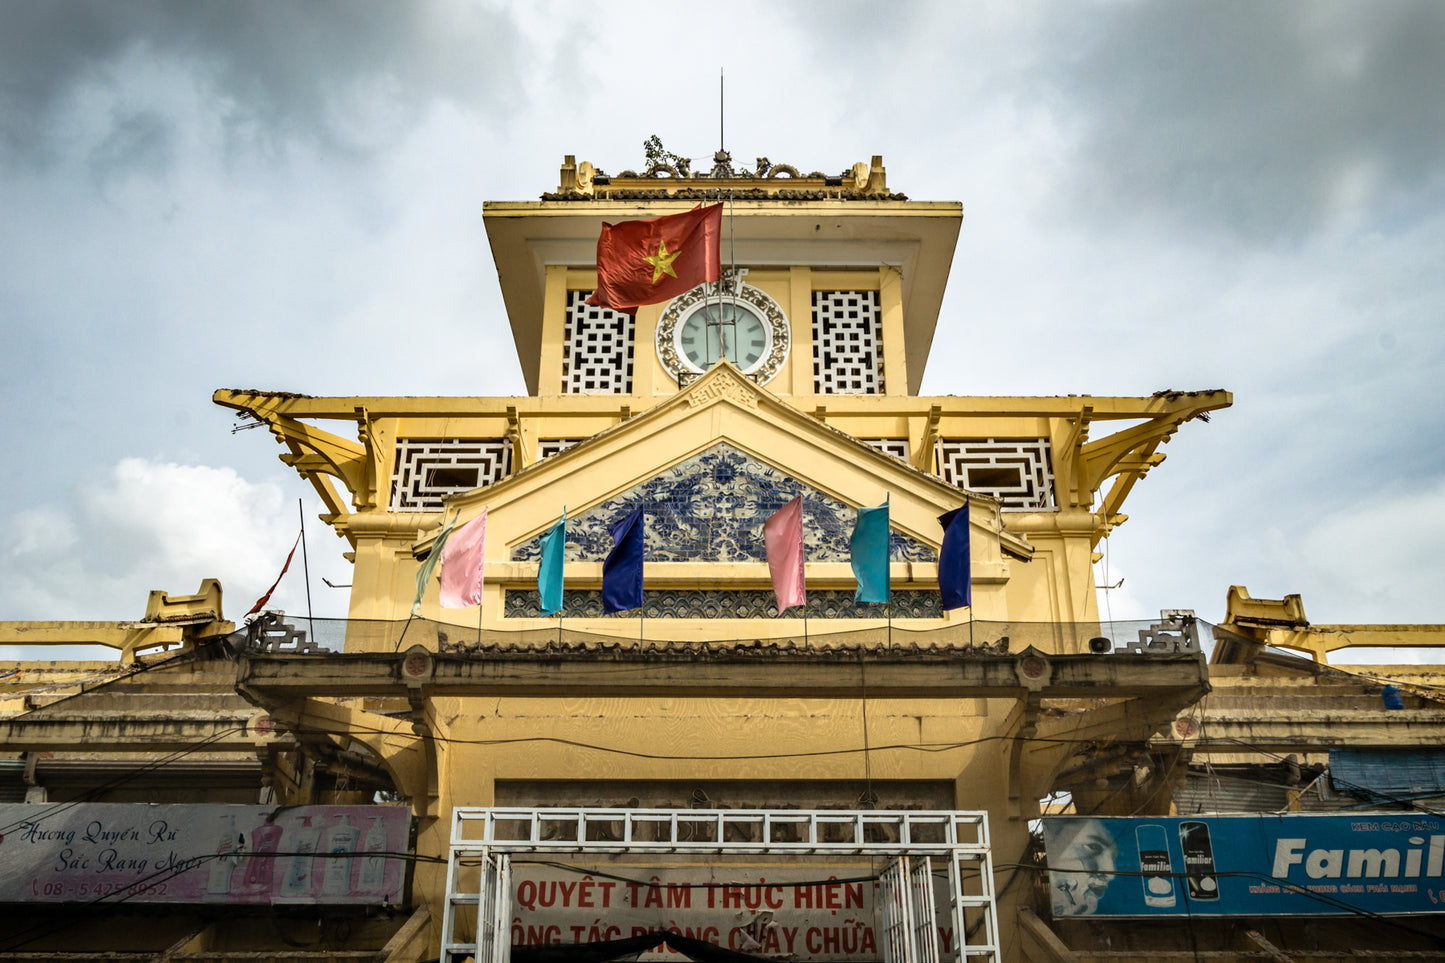 Unseen Sài Gòn, Phần 4: Đi bộ tham quan thành phố lịch sử - CHINATOWN